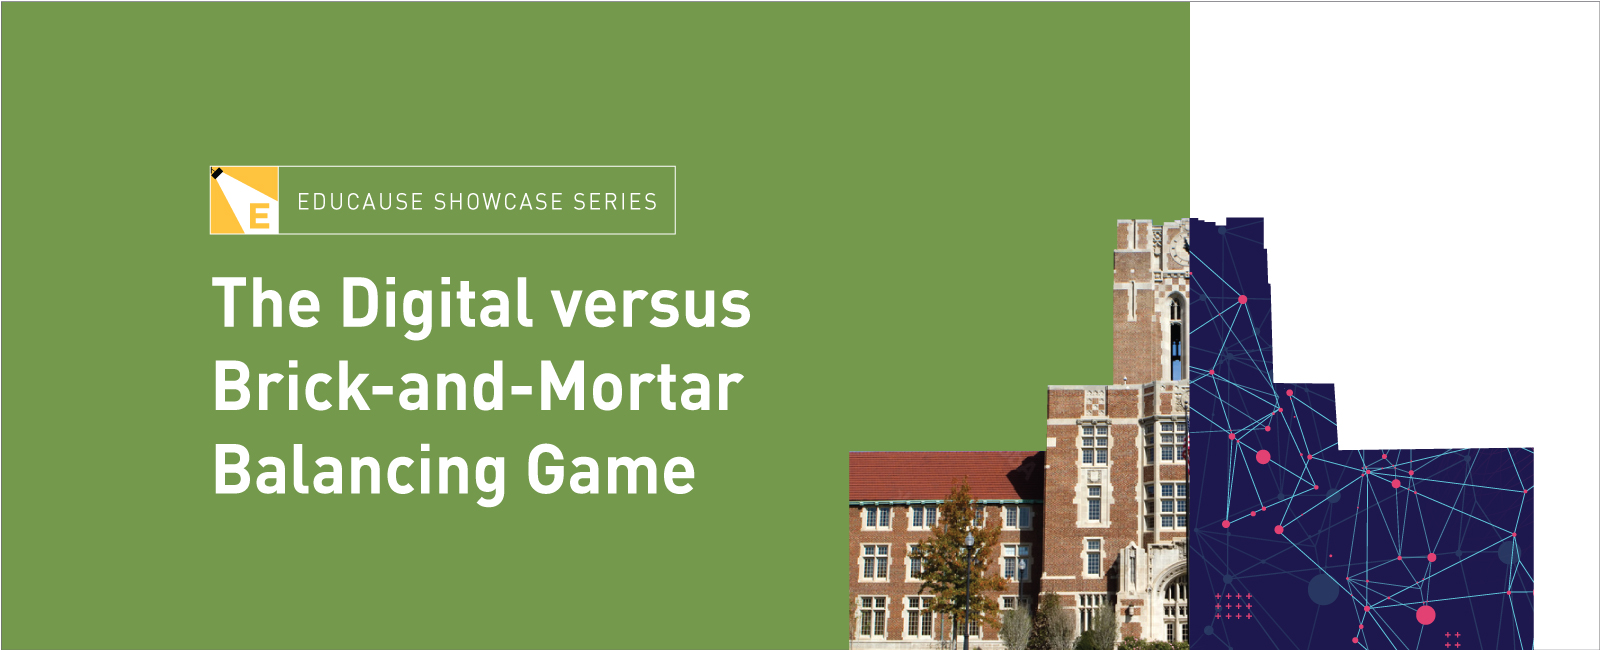 EDUCAUSE Showcase Series | The Digital versus Brick-and-Mortar Balancing Game